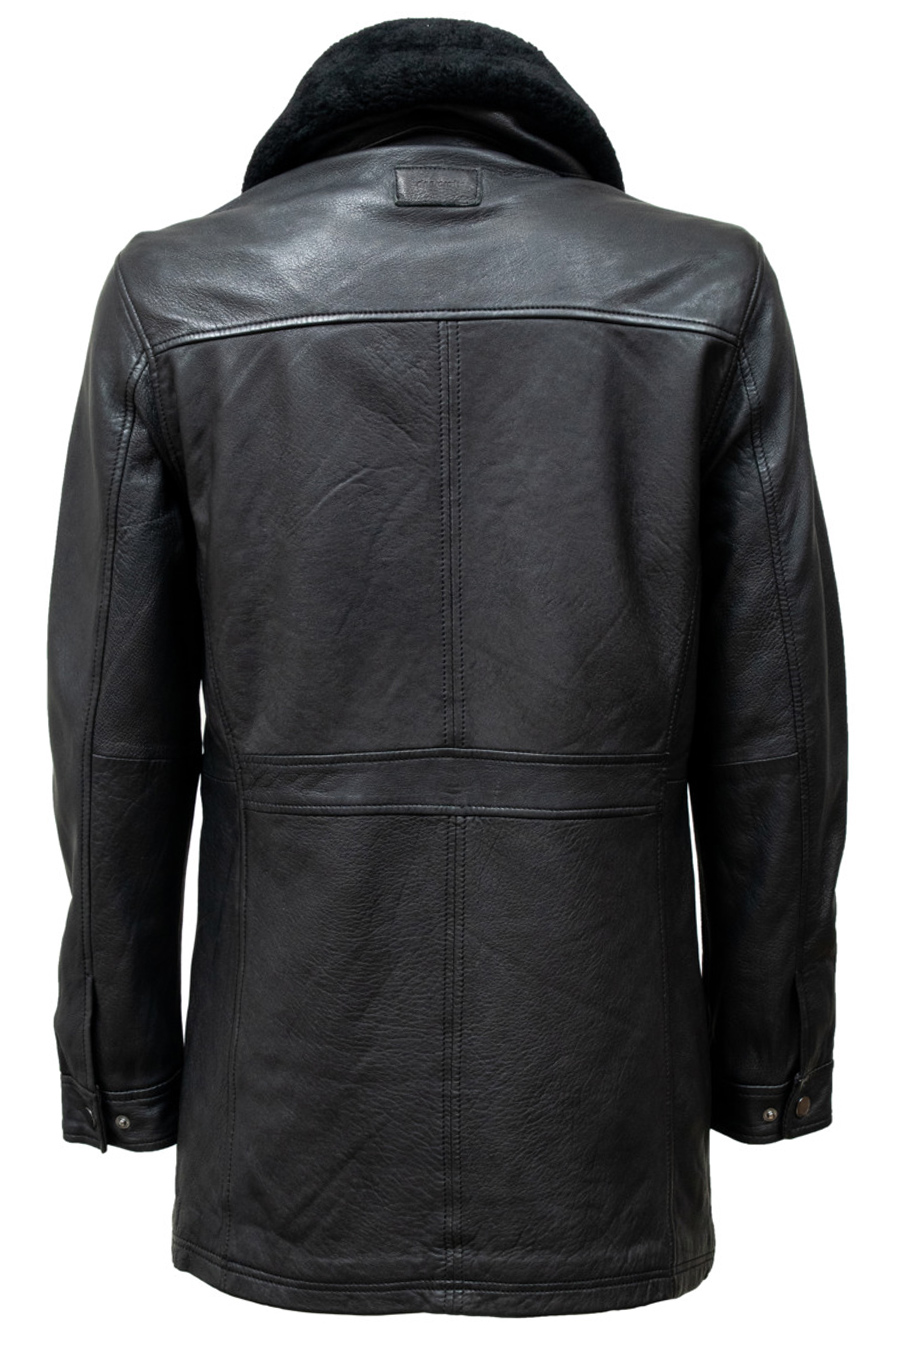 Leather jacket DEERCRAFT 3701-0123-black